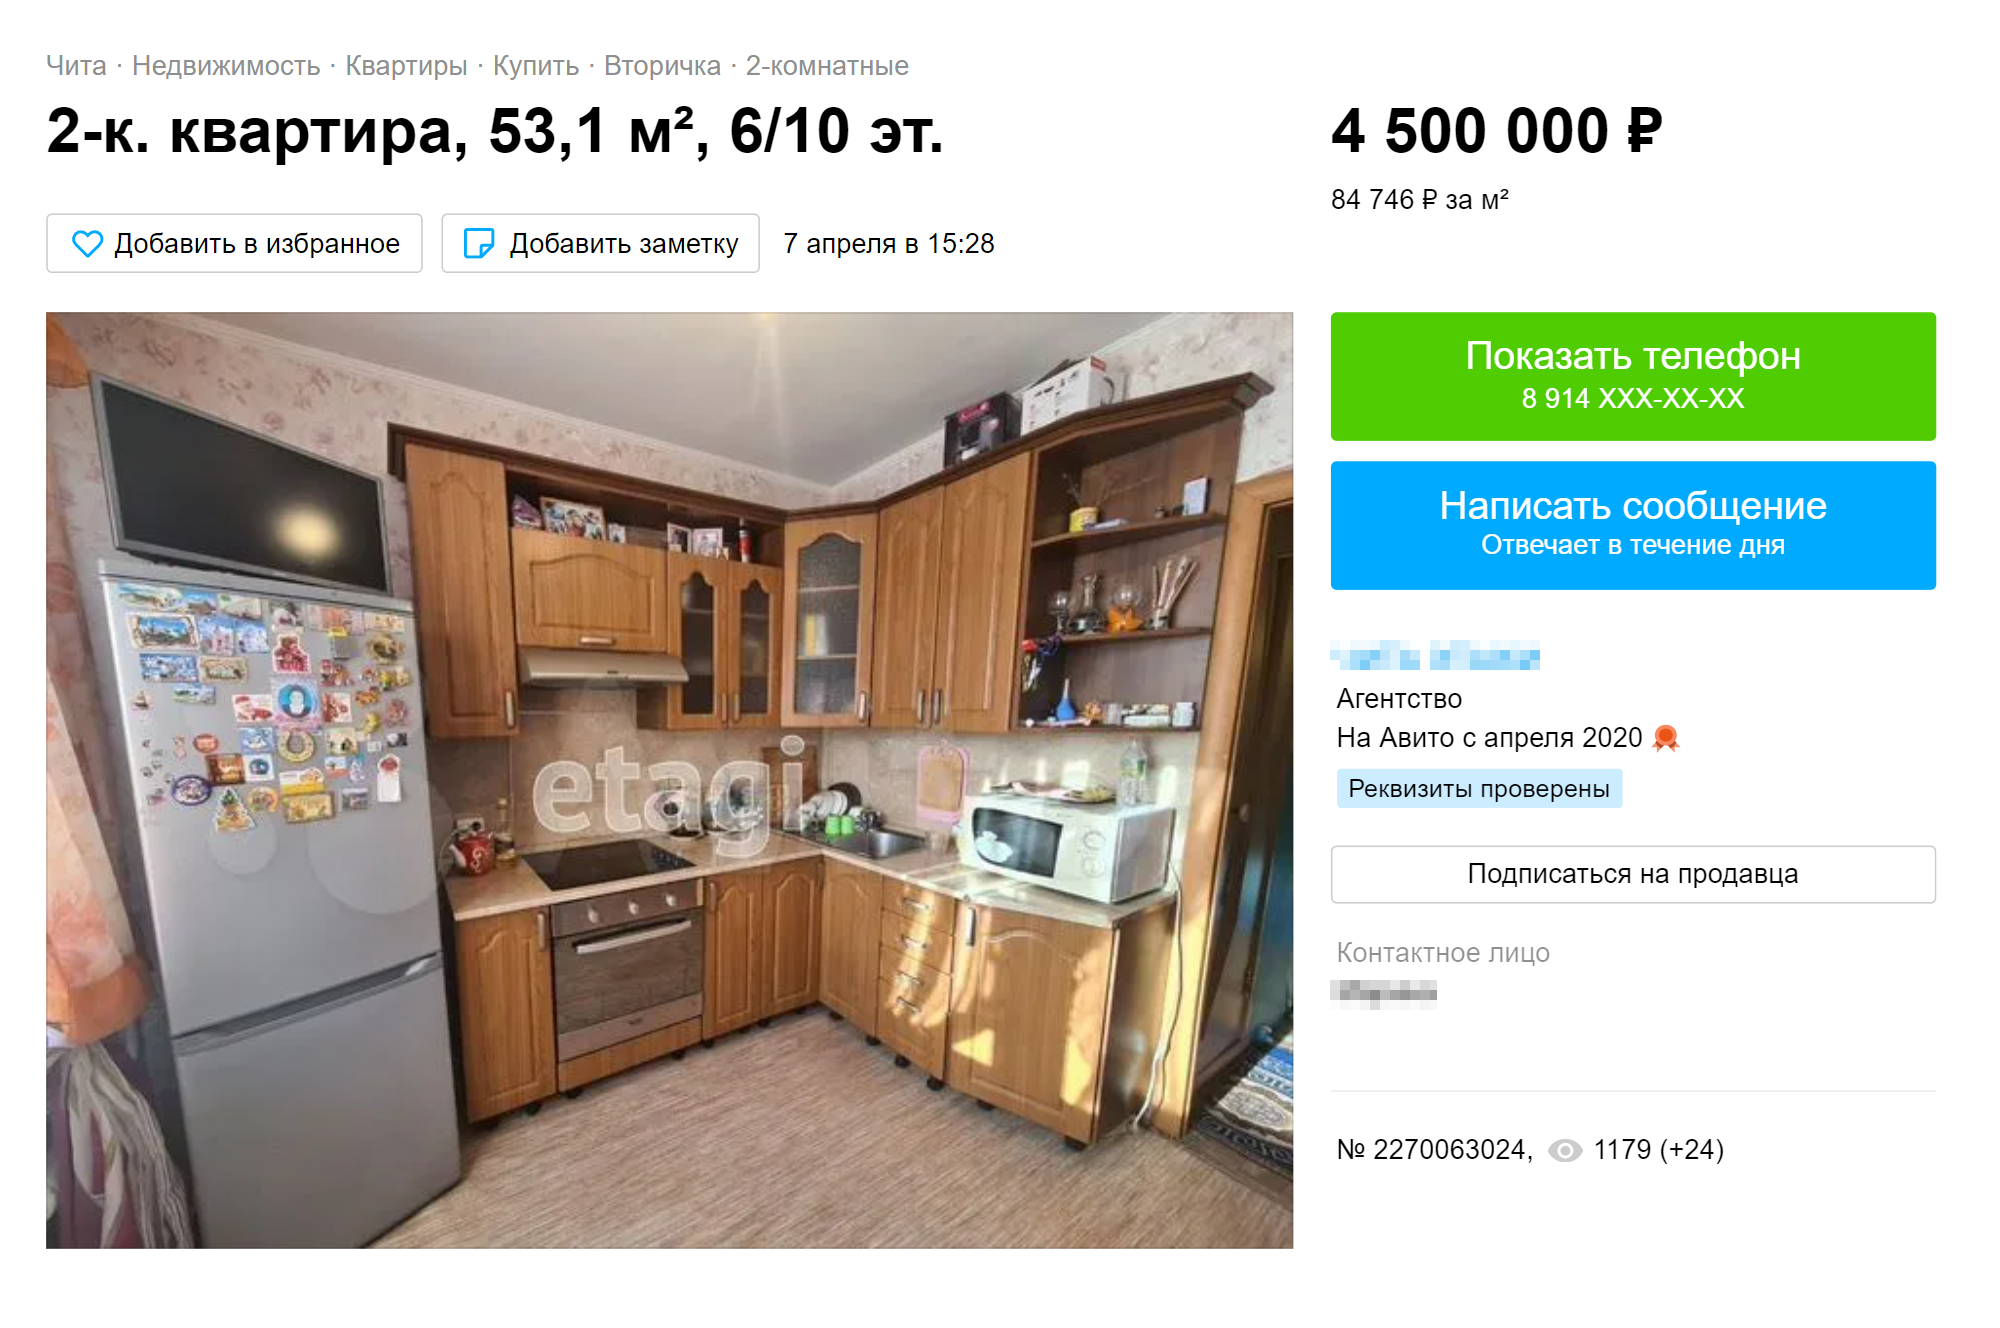 Двушка в спальном районе за 4,5 млн рублей